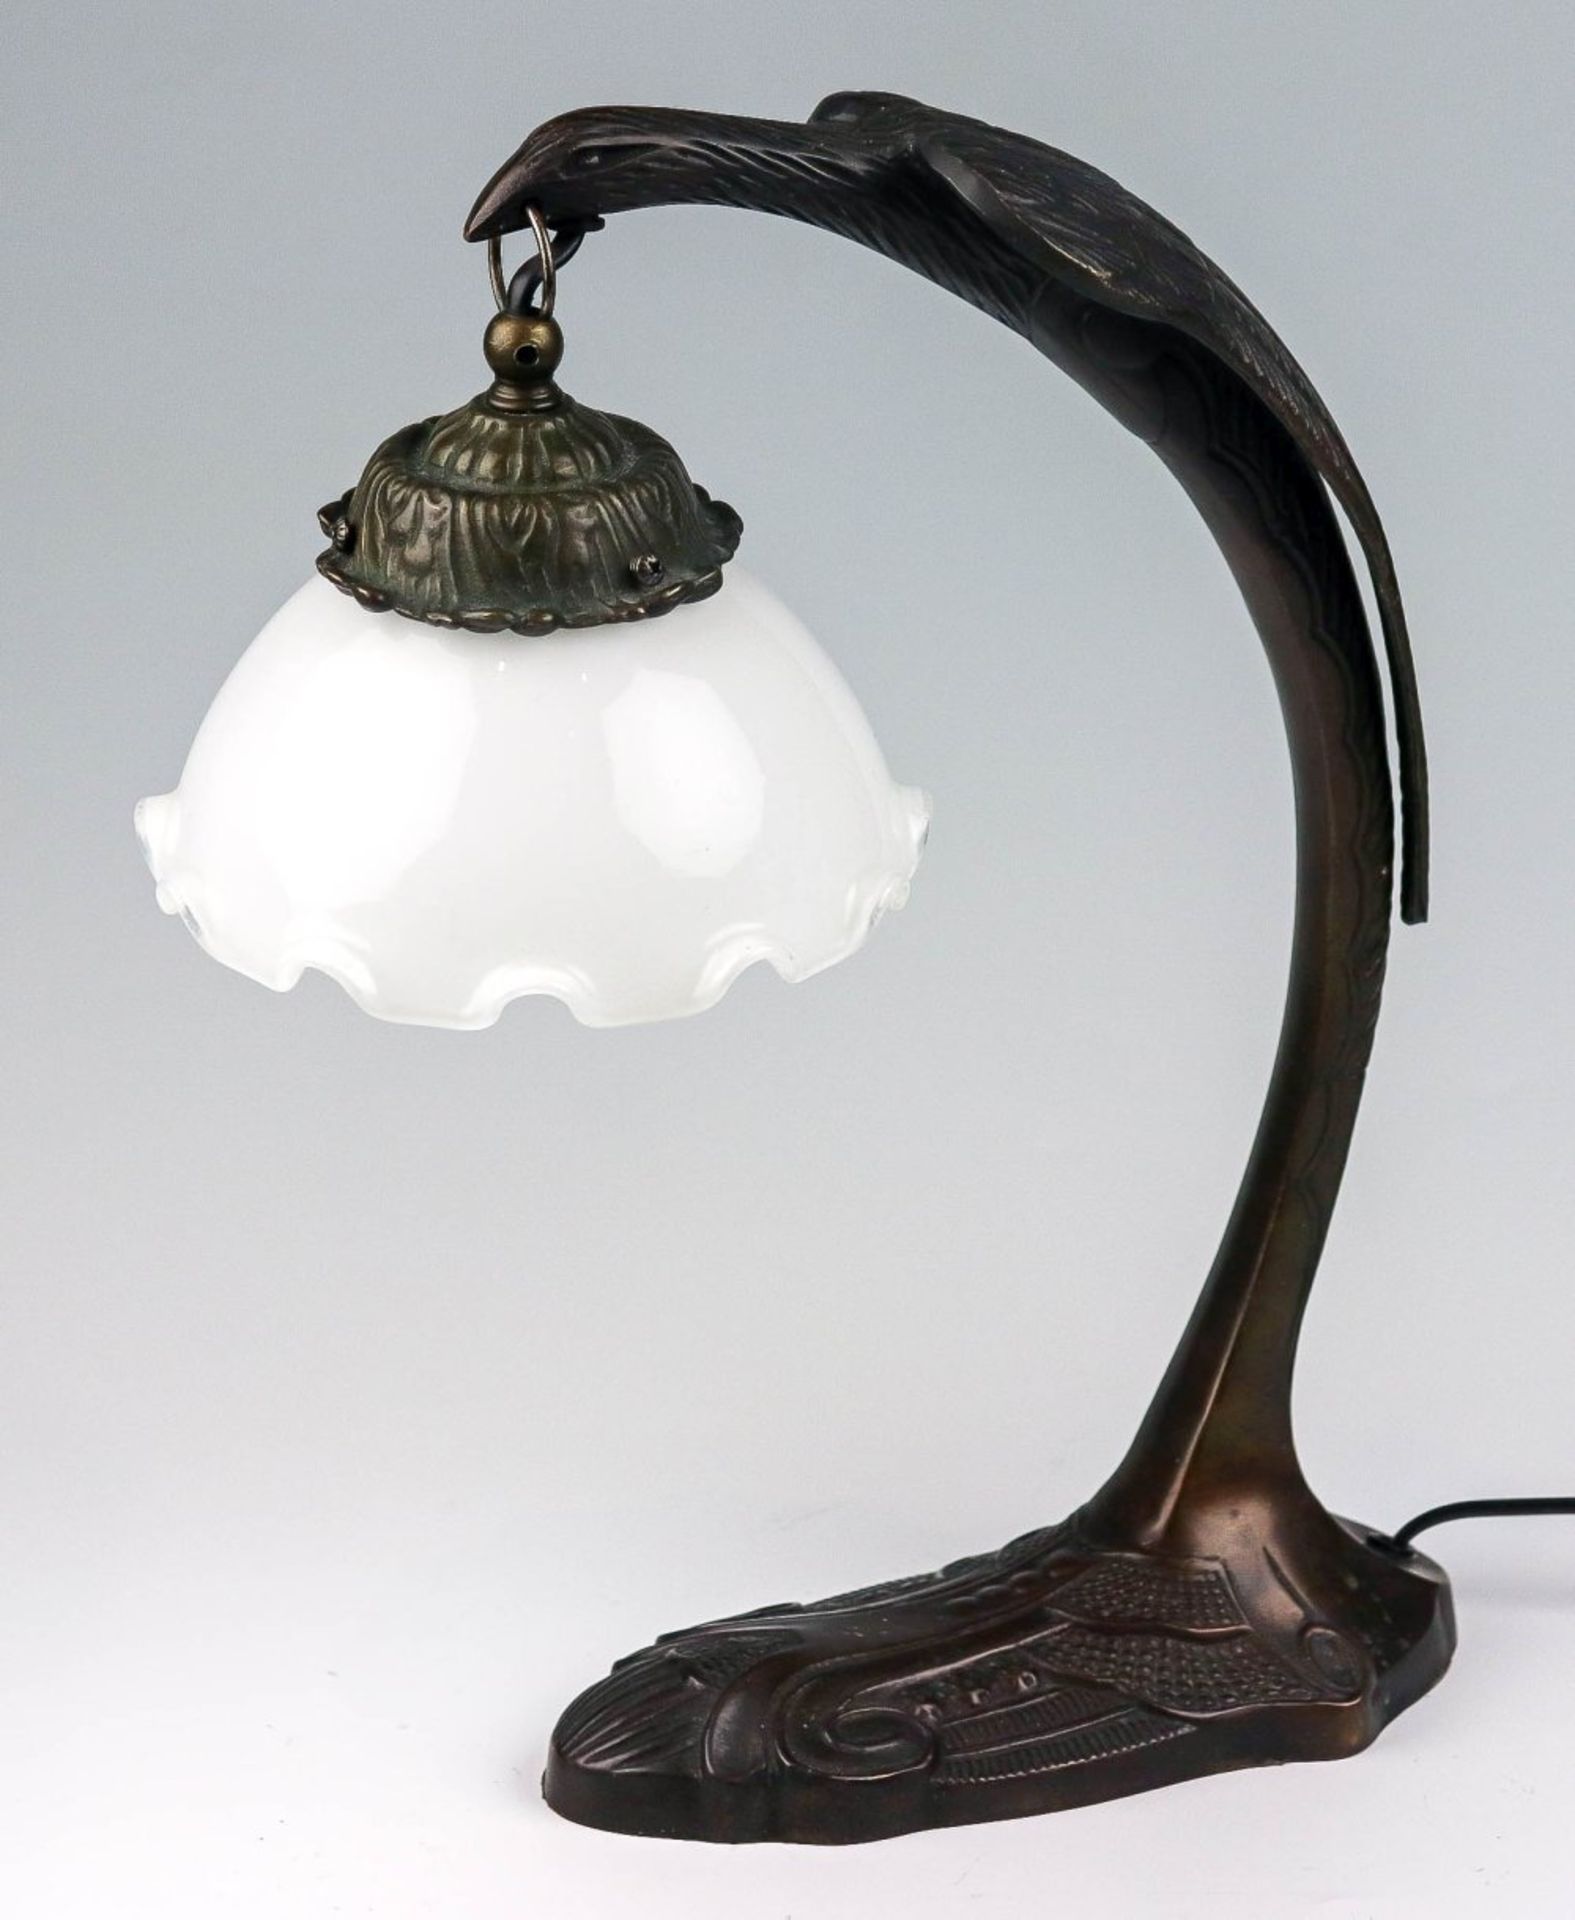 Tischlampe im Jugendstil nach Entwurf von Charles Ranc